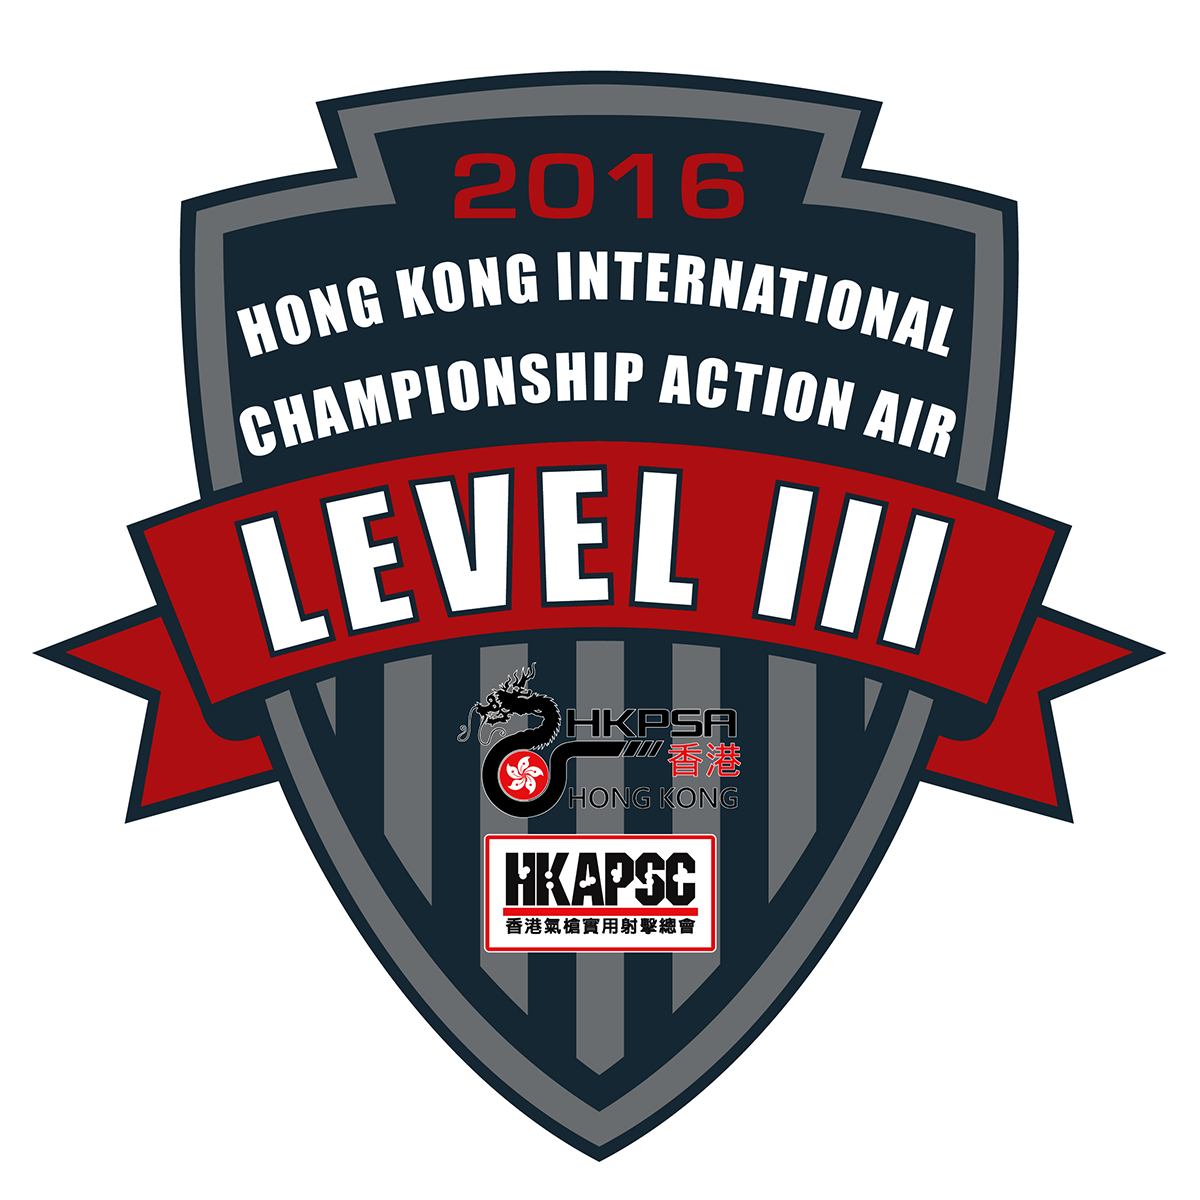 Hong Kong Action Air Handgun Championship 2016